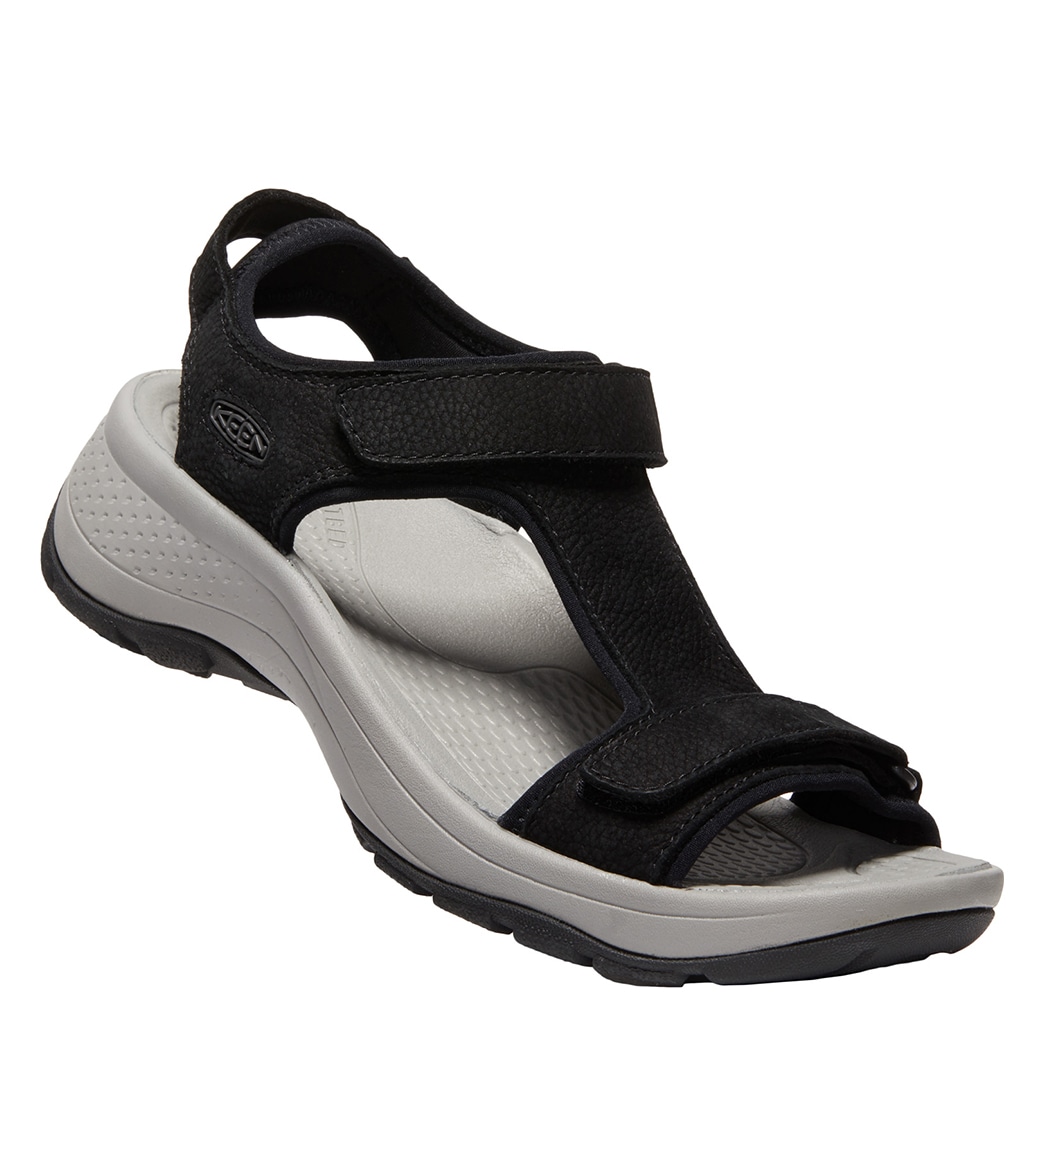 Keen Women's Astoria West T-Strap Leather Sandals - Black 6 - Swimoutlet.com